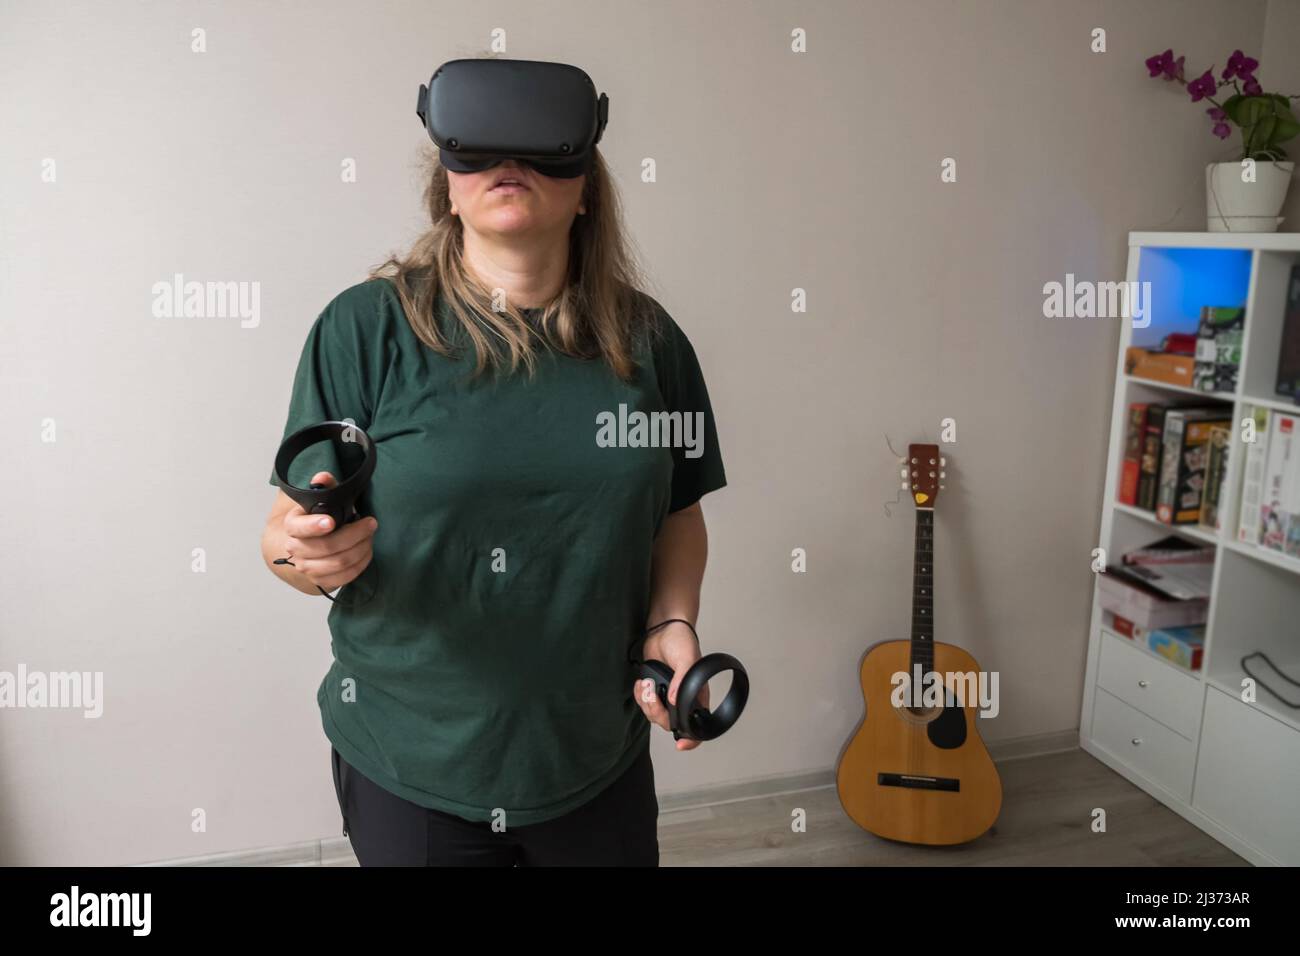 Ein Mädchen in einem grünen T-Shirt mit VR-Brille und Controllern in ihren Händen reist durch das Metaglas-Universum, während es in einem grauen Raum steht. Ein Virt Stockfoto